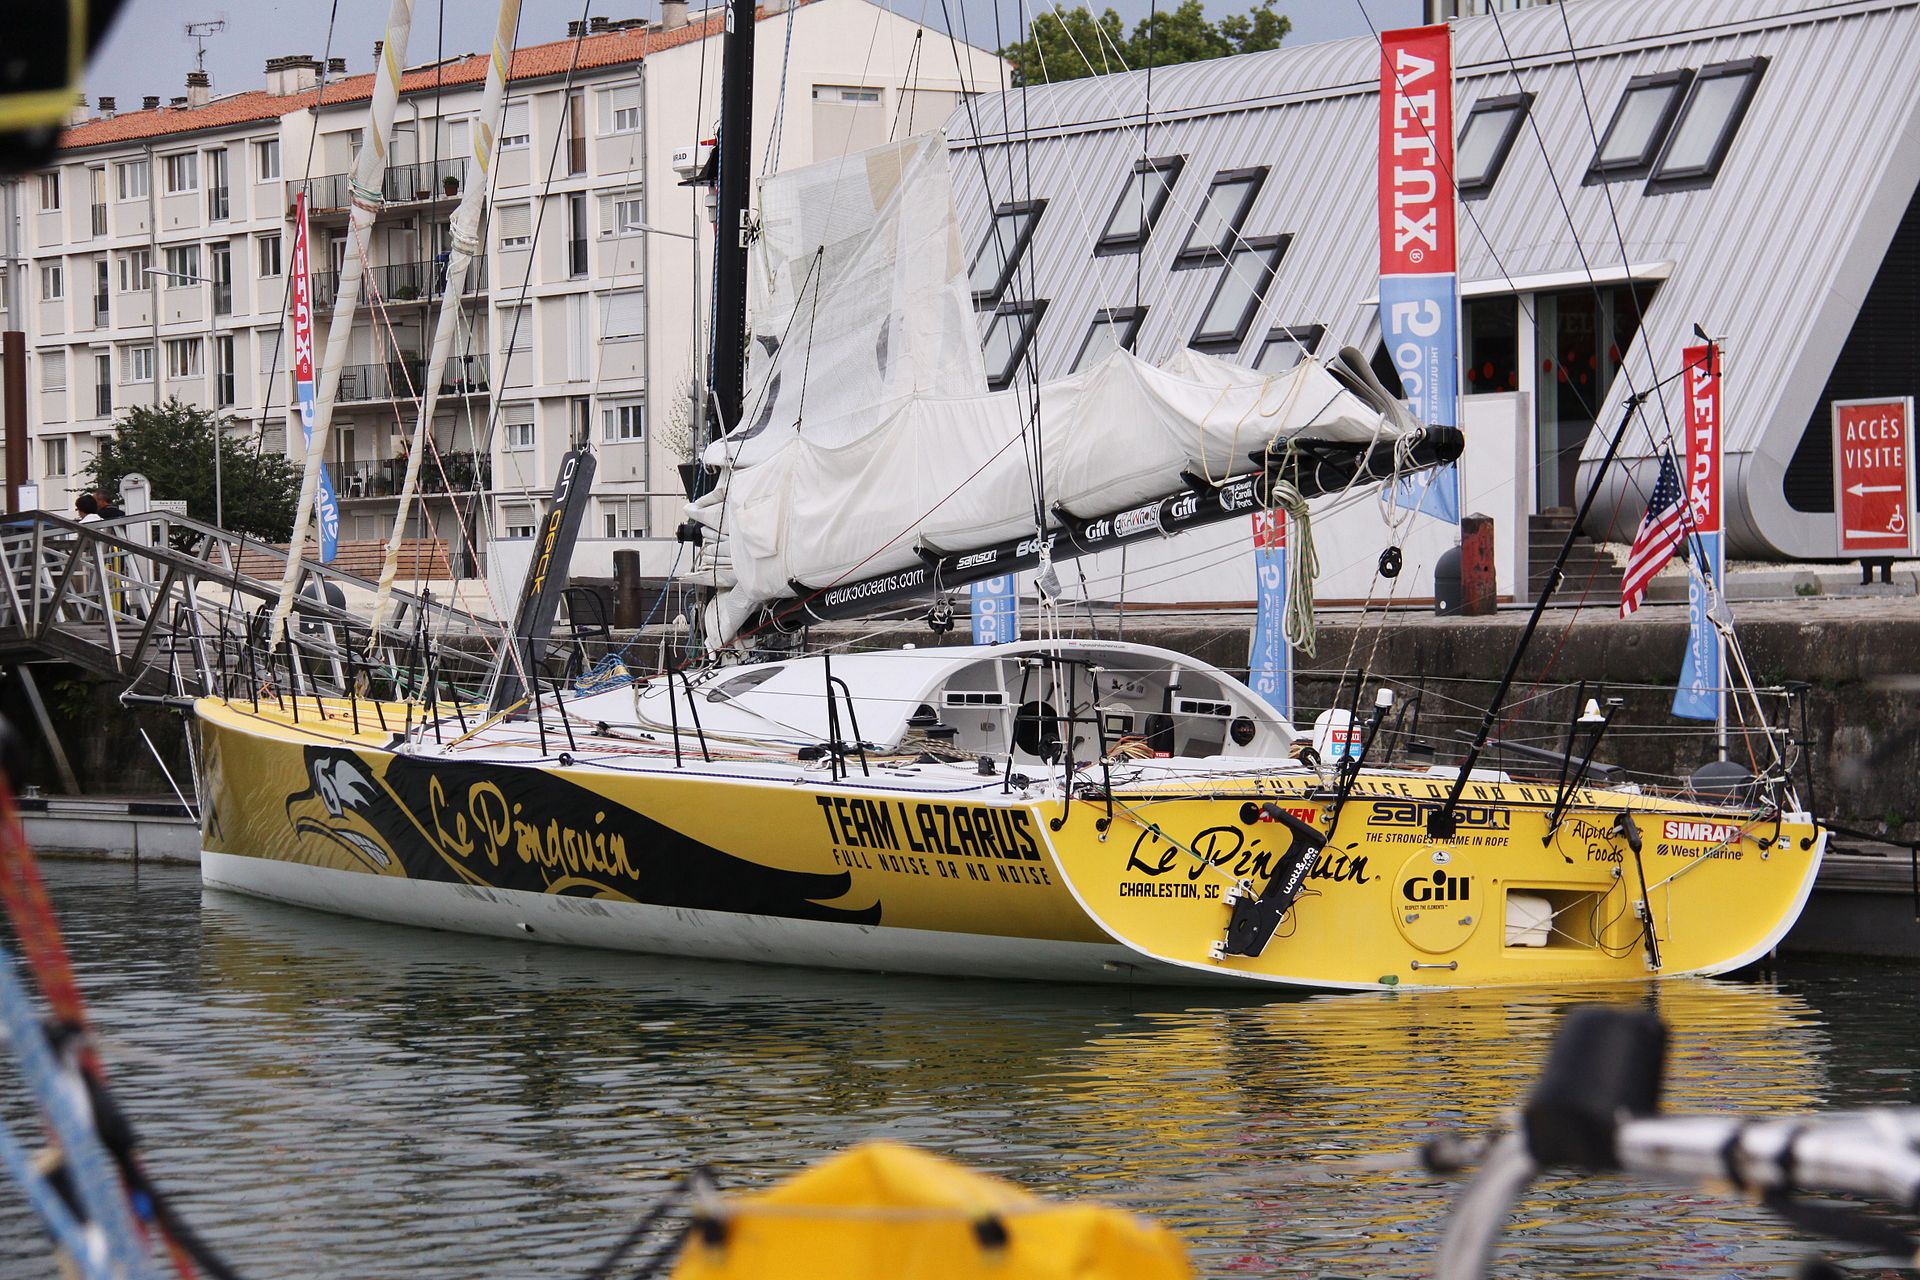 The_racing_sailboat_The_Pingouin_(13)